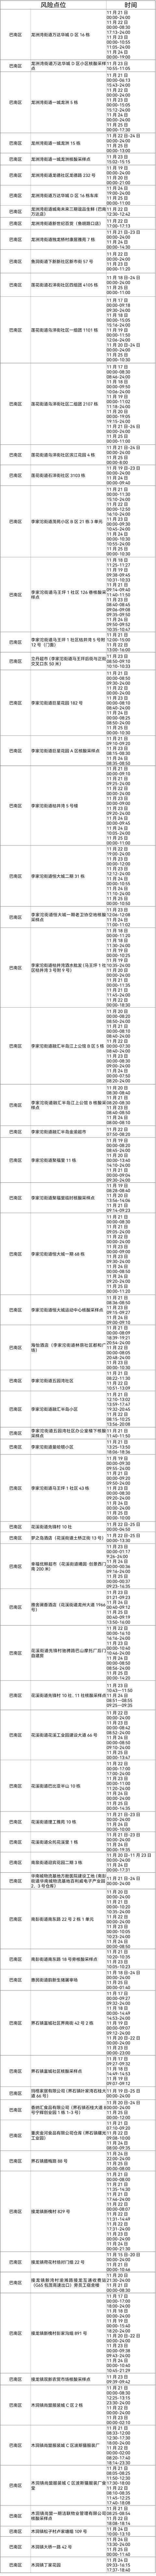 重庆市大渡口区、大渡口区、大渡口区、大渡口区疫情防控通告  第22张